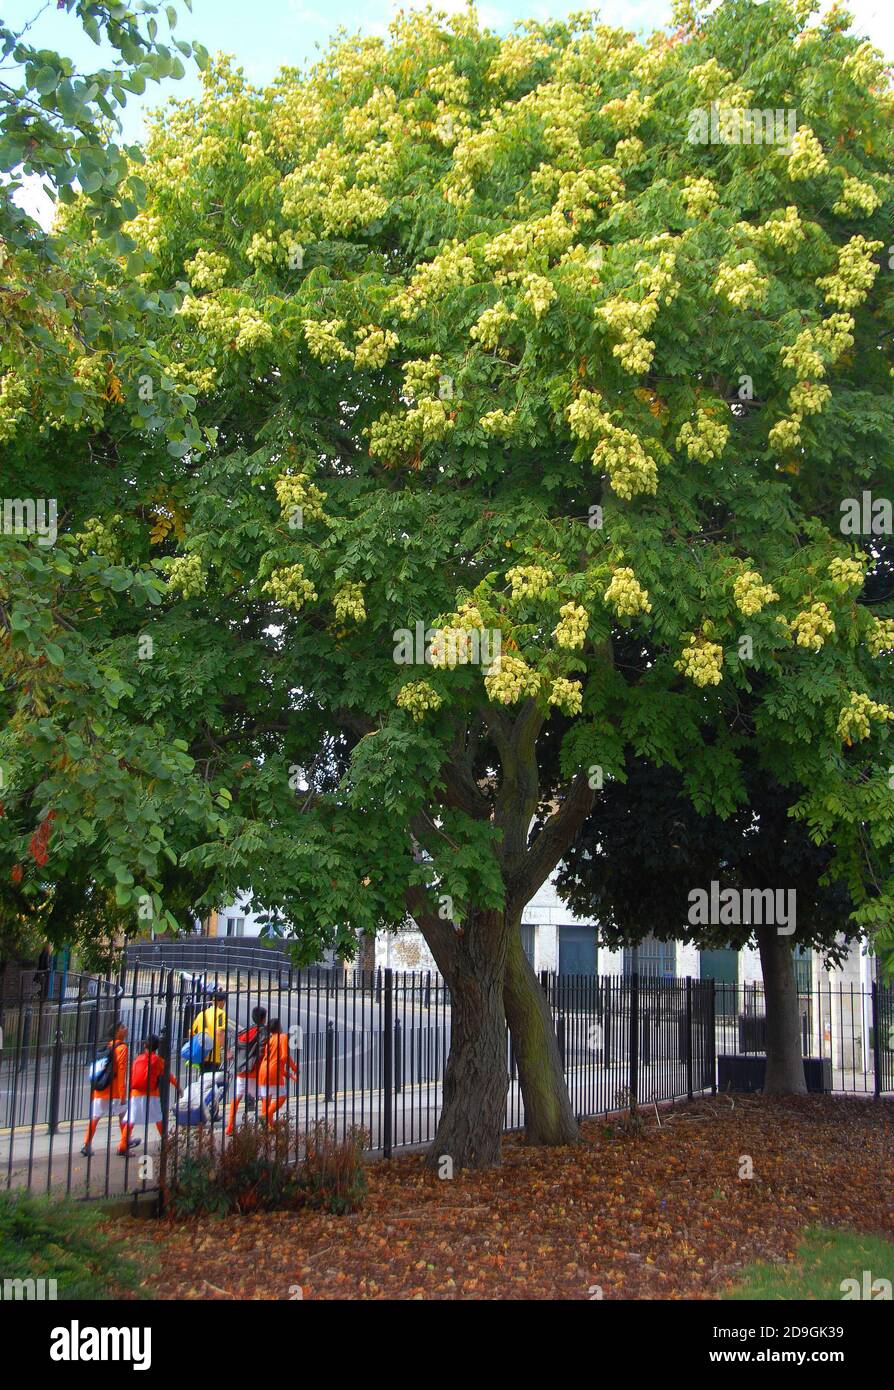 A mature Koelreuteria tree Stock Photo